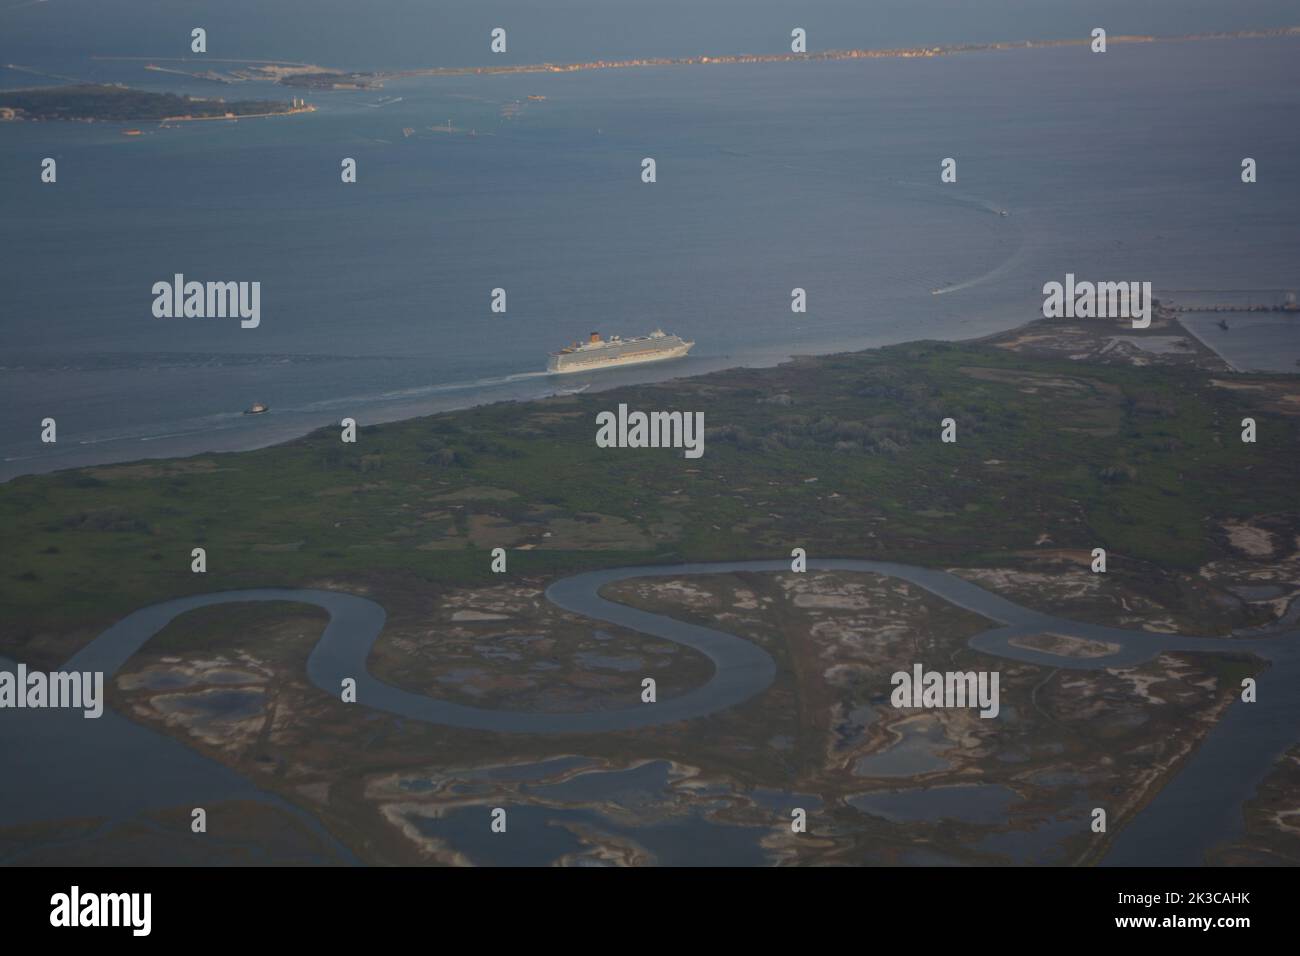 Luftpanorama der Lagune von Venedig mit einem Schiff in der Mitte - Europa Stockfoto